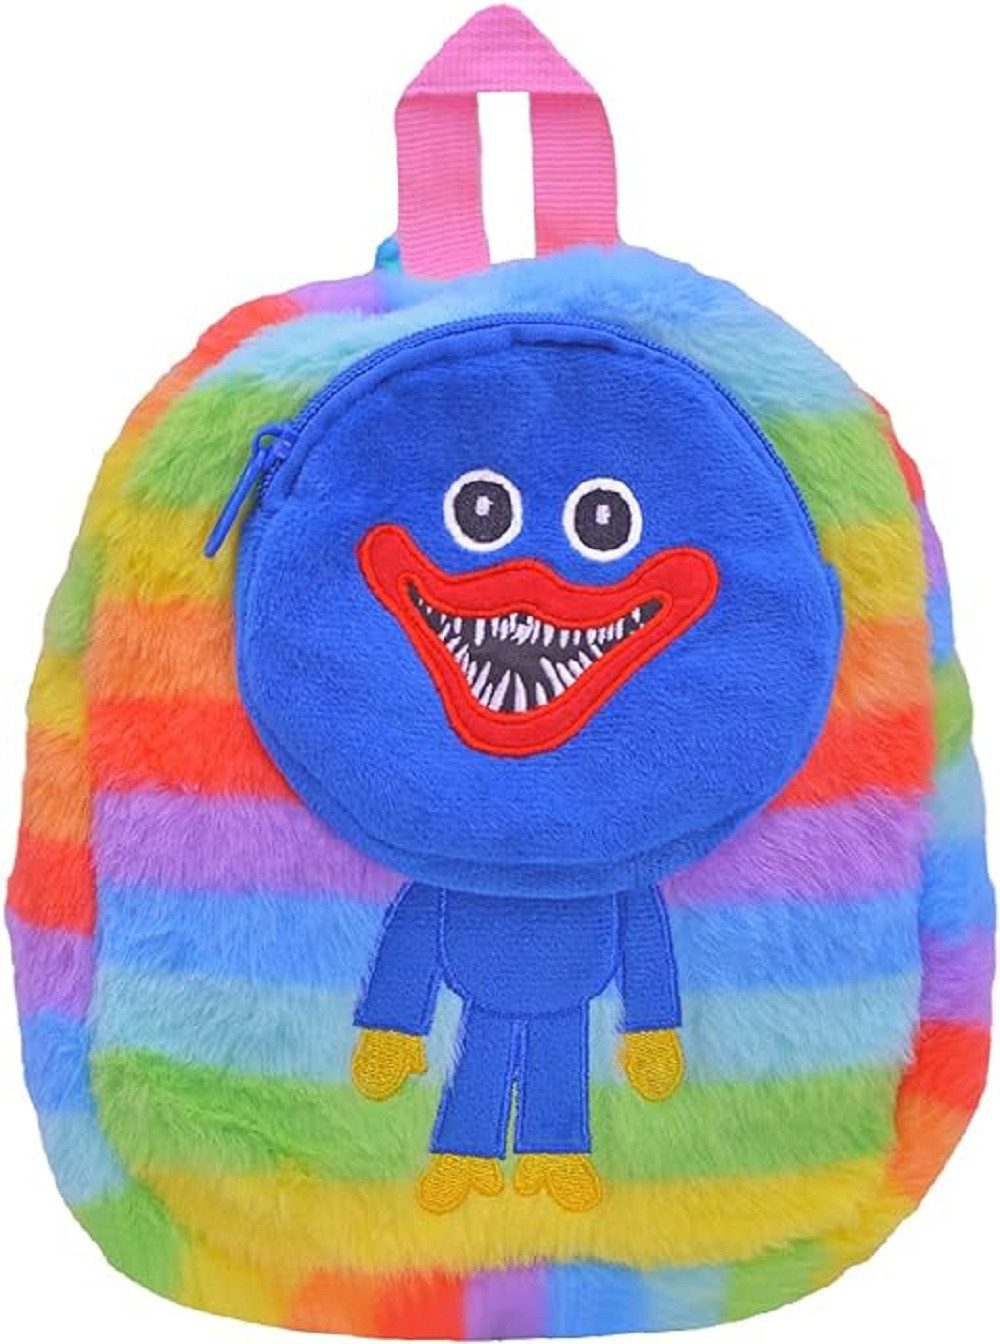 Wiztex Kinderrucksack Huggy Poppy Playtime Mini-Rucksack, Regenbogen-Kinderzimmertasche